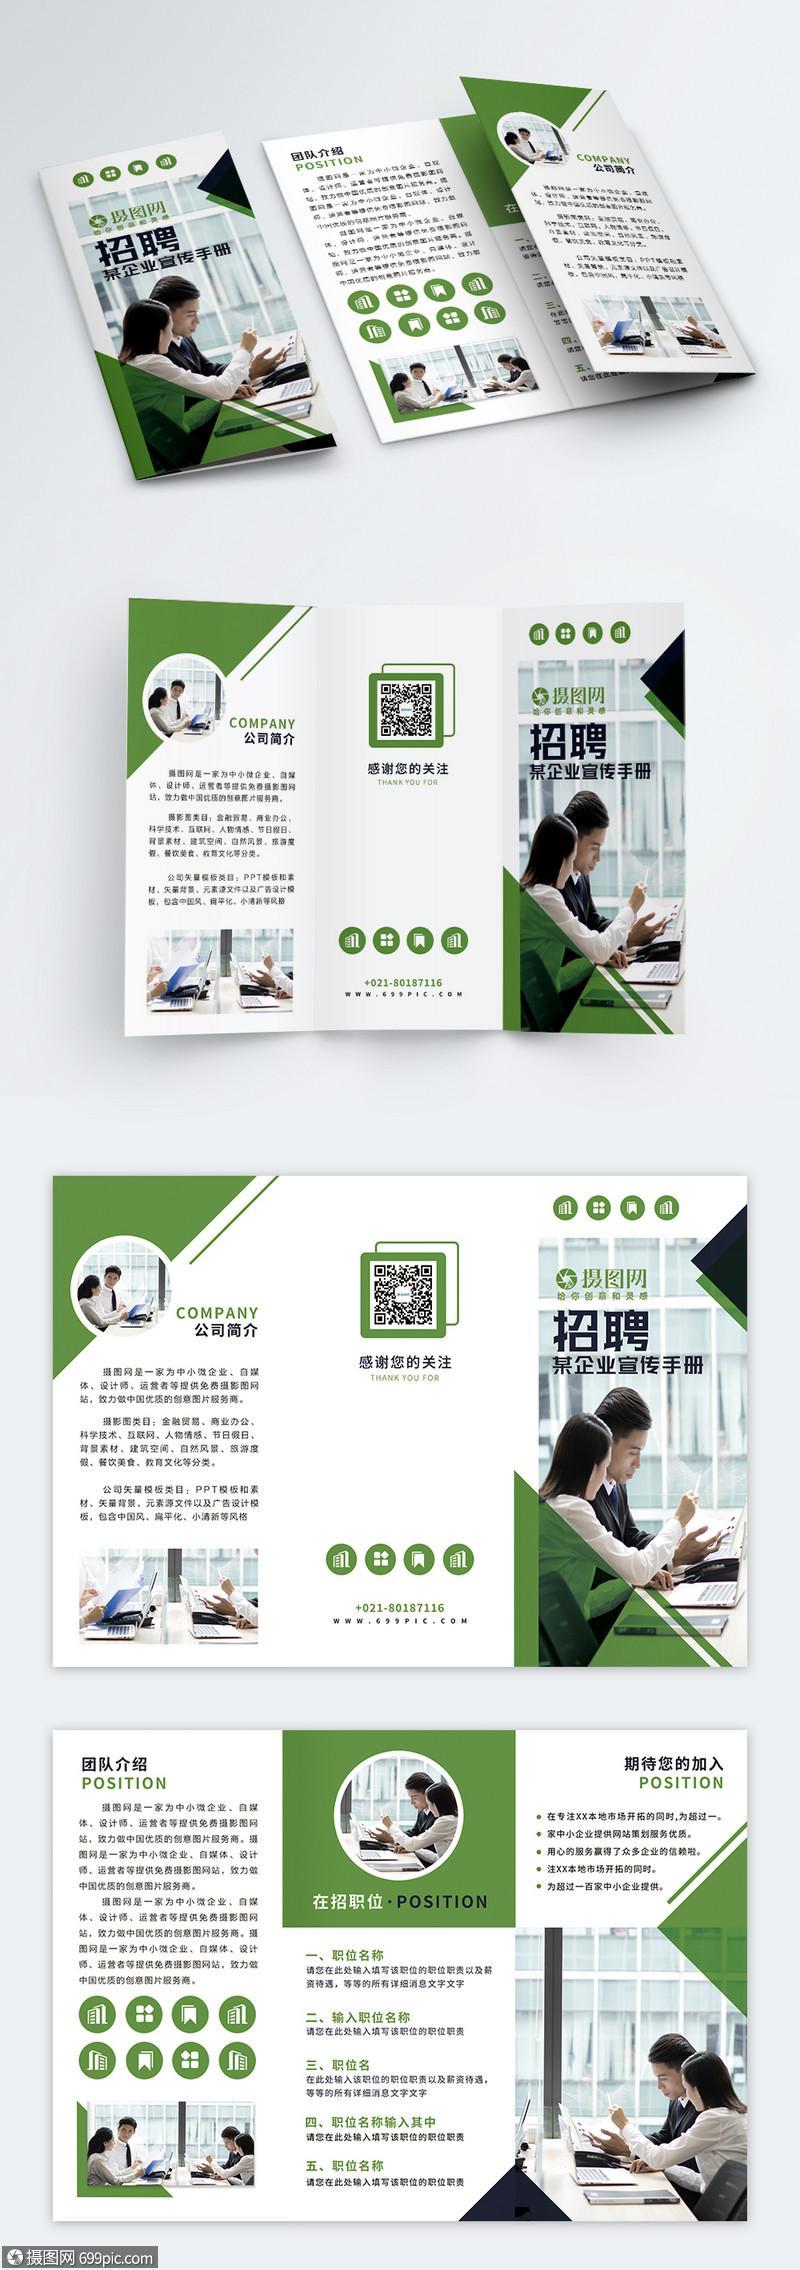 湖南精品企业画册设计招聘的相关图片